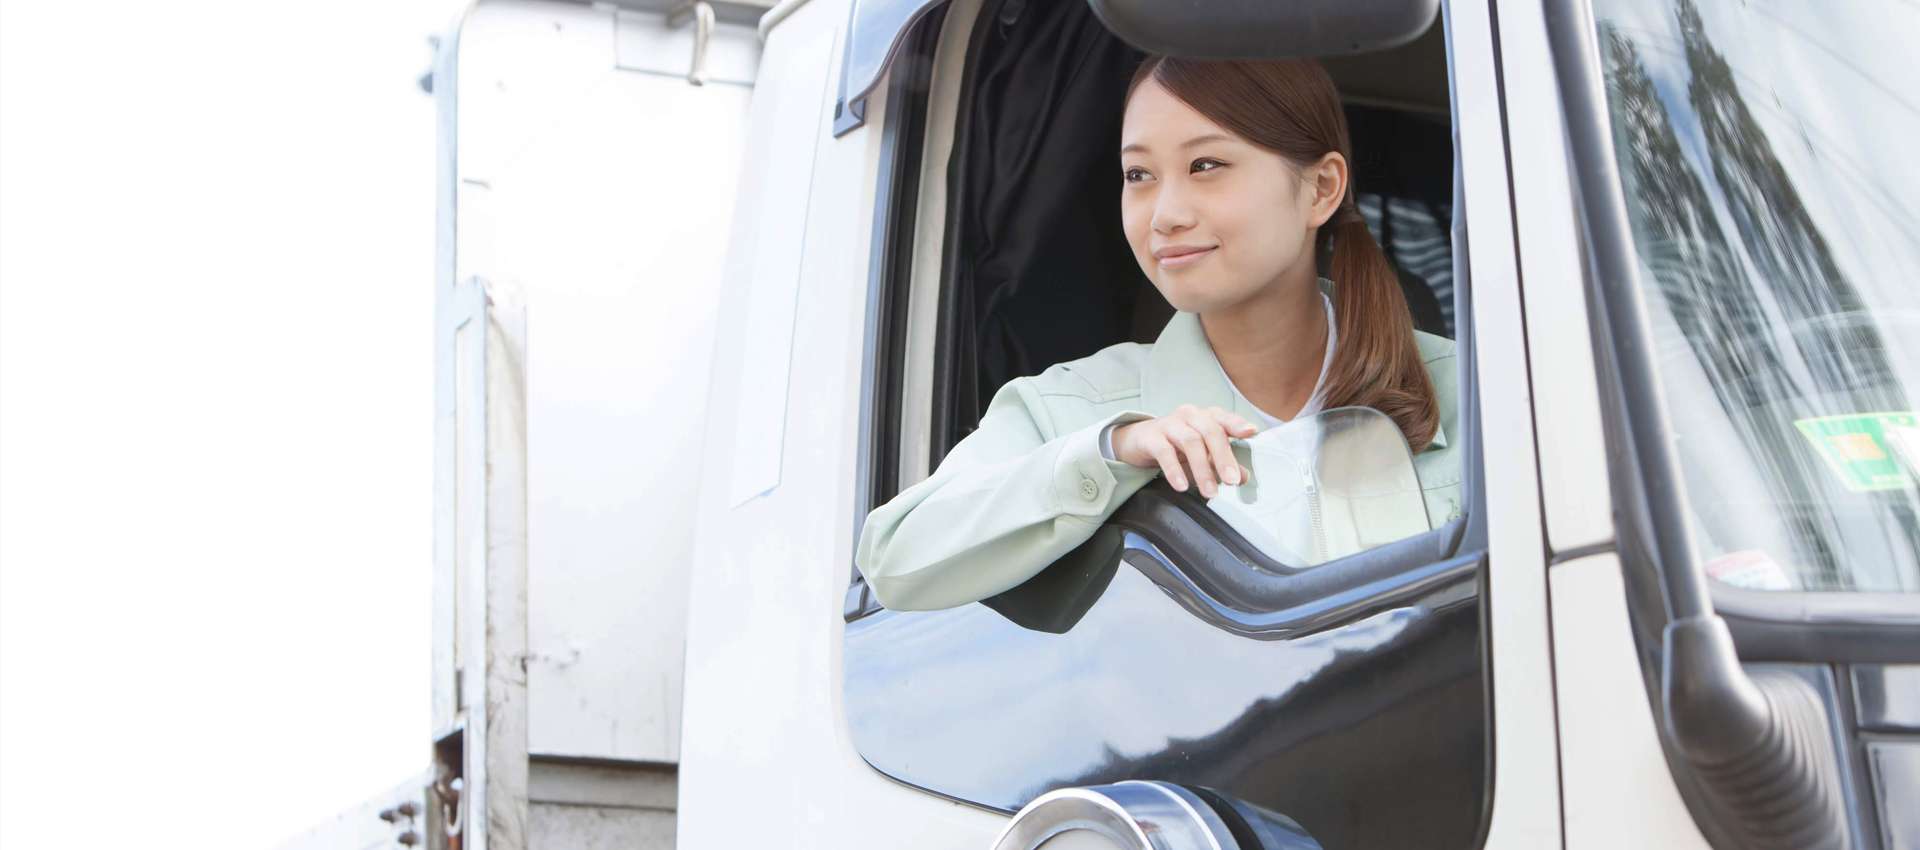 全国各地で活躍できる運送会社の求人を東京で行っております